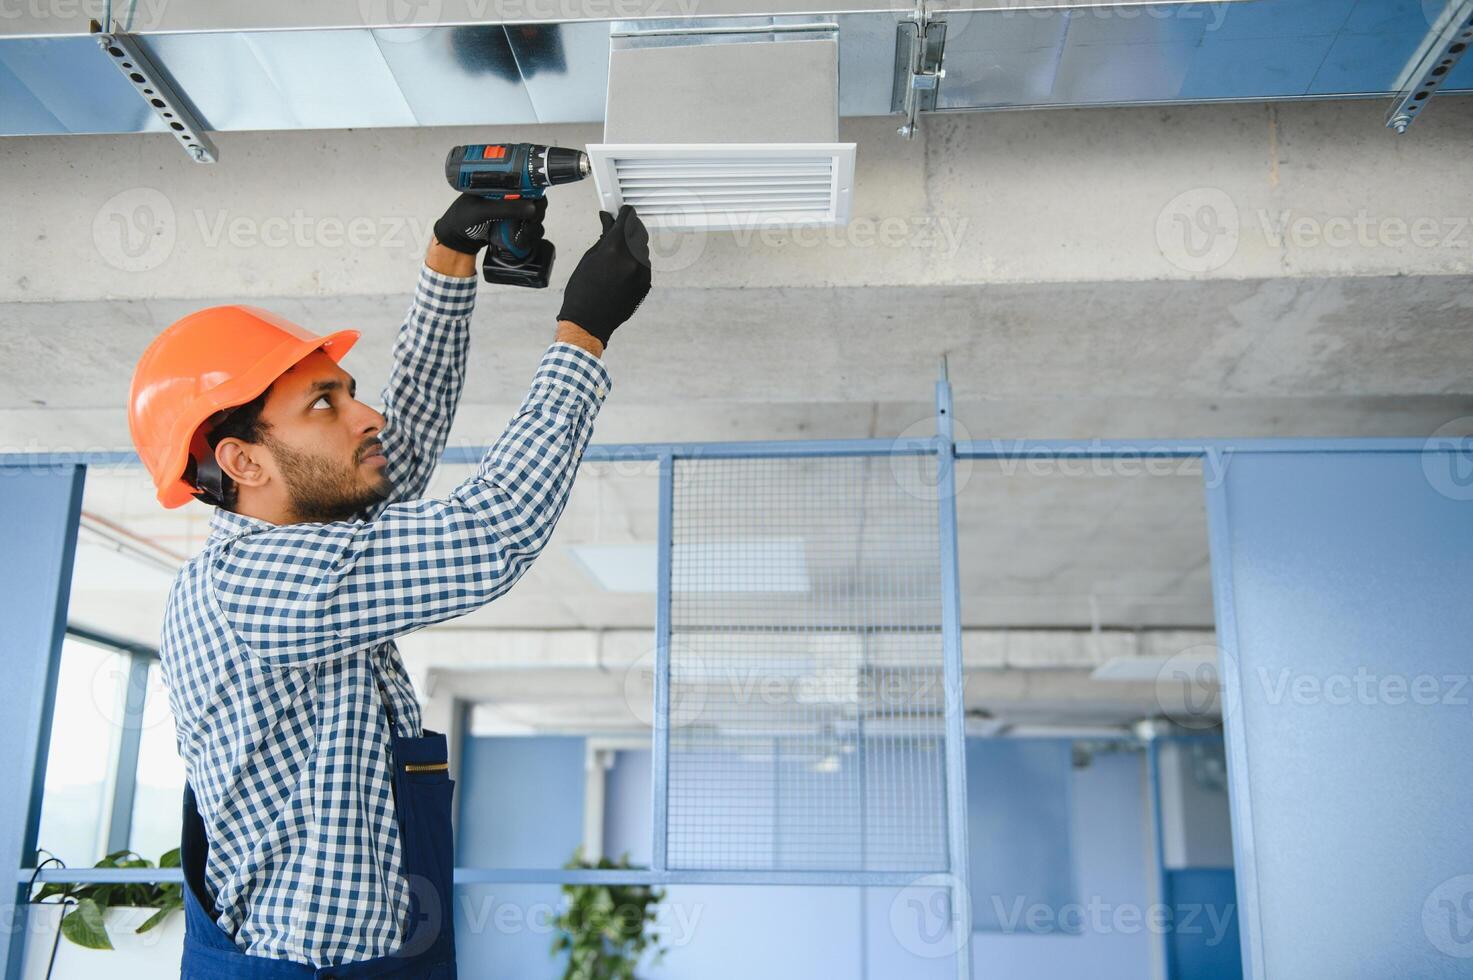 hvac tjänster - indisk arbetstagare Installera kanaliserad rör systemet för ventilation och luft konditionering i hus foto